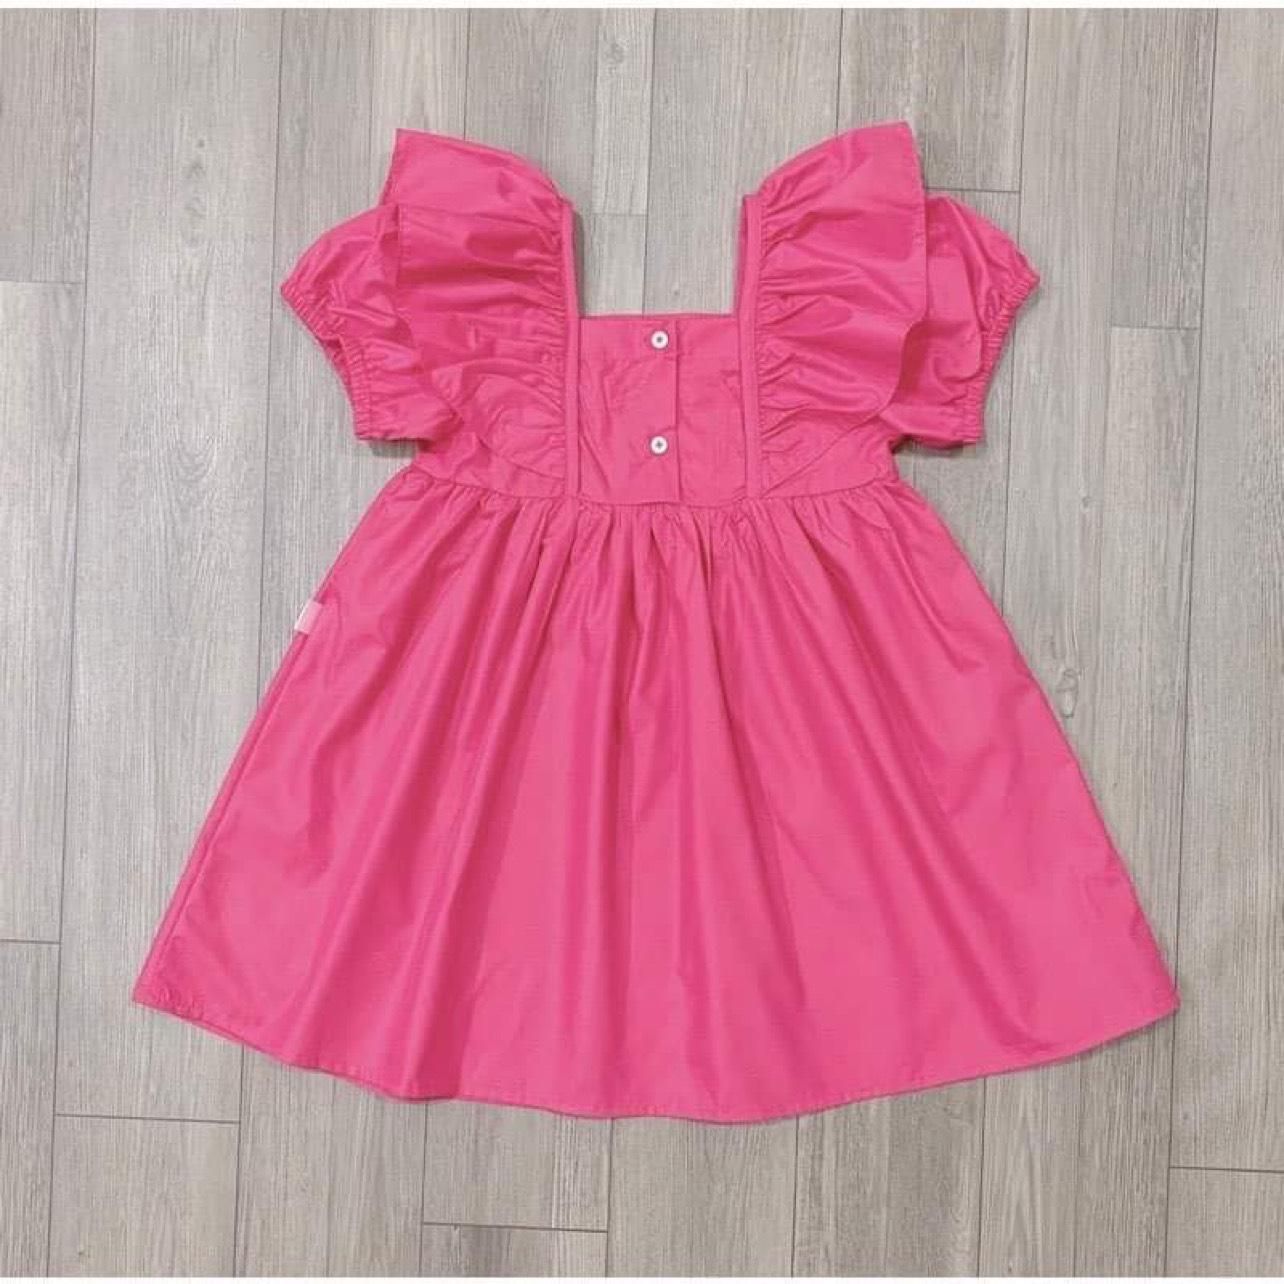 Vải cotton nhung màu hồng cánh sen dày vừa khổ 1m5may đầm váy ,áo kiểu